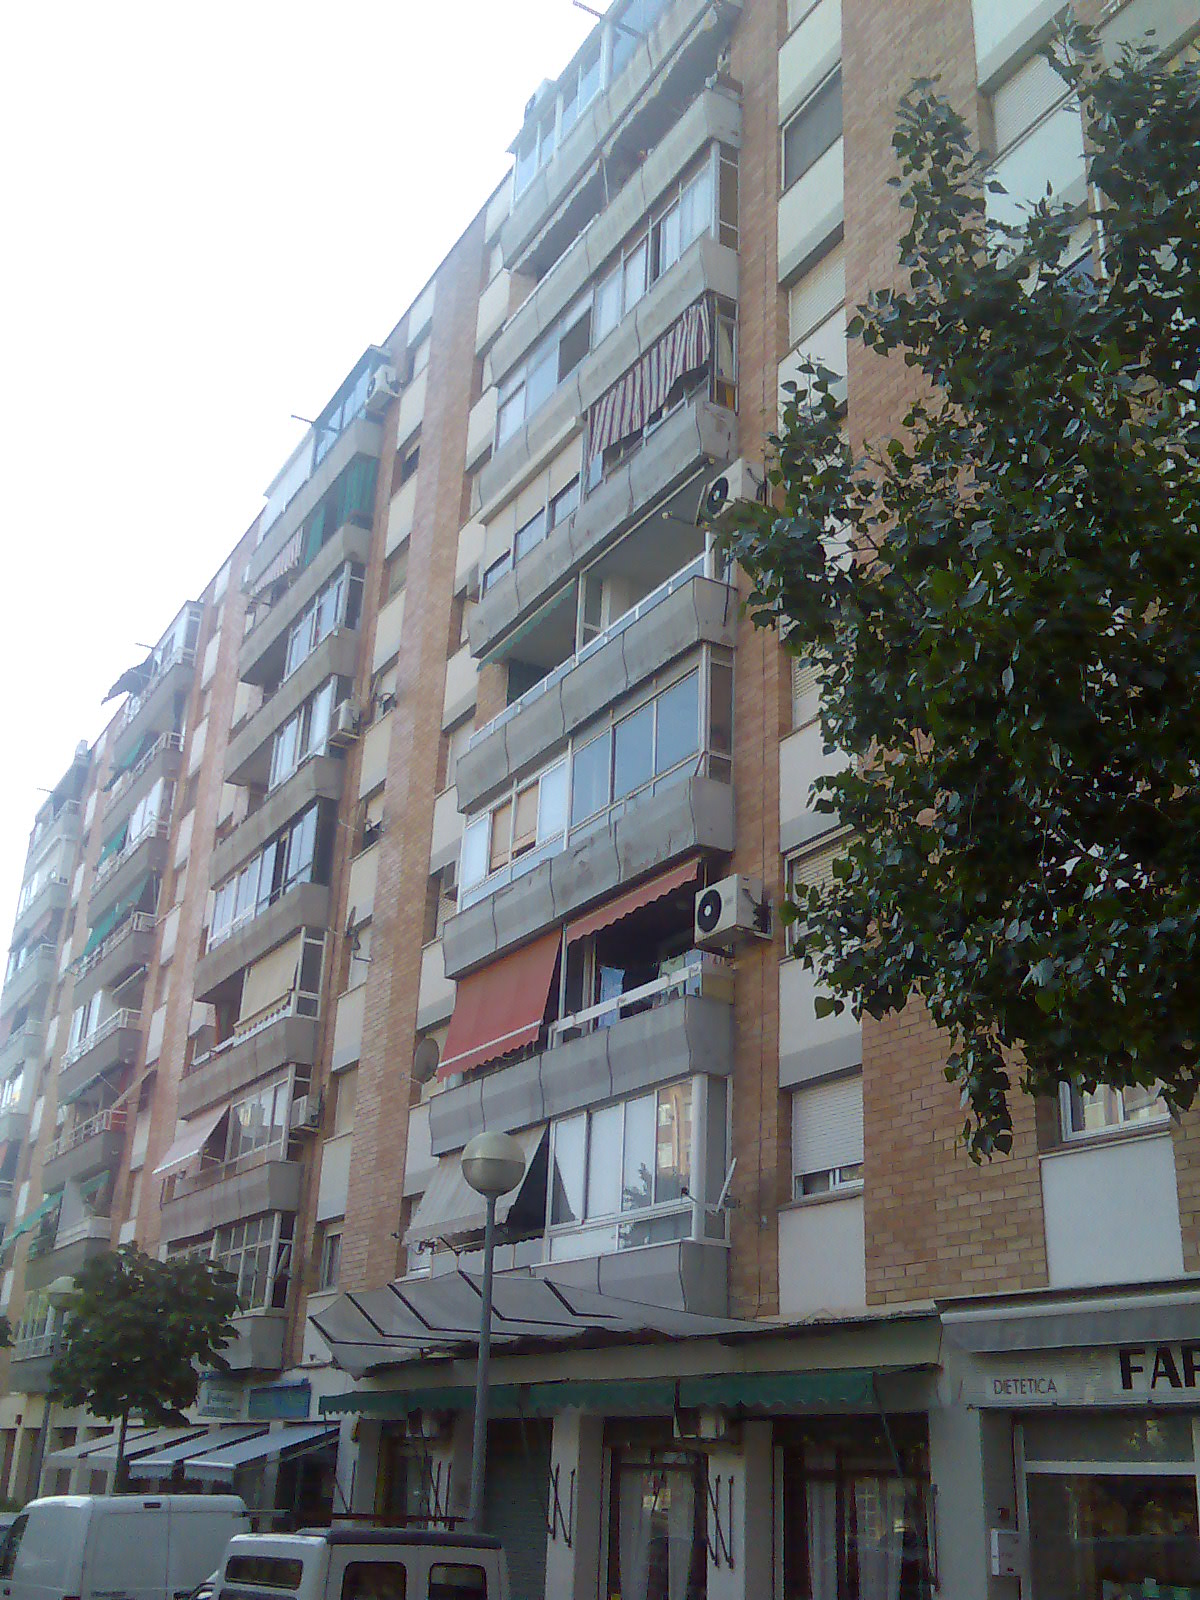 Edificio plurifamiliar fachada – Viladecans